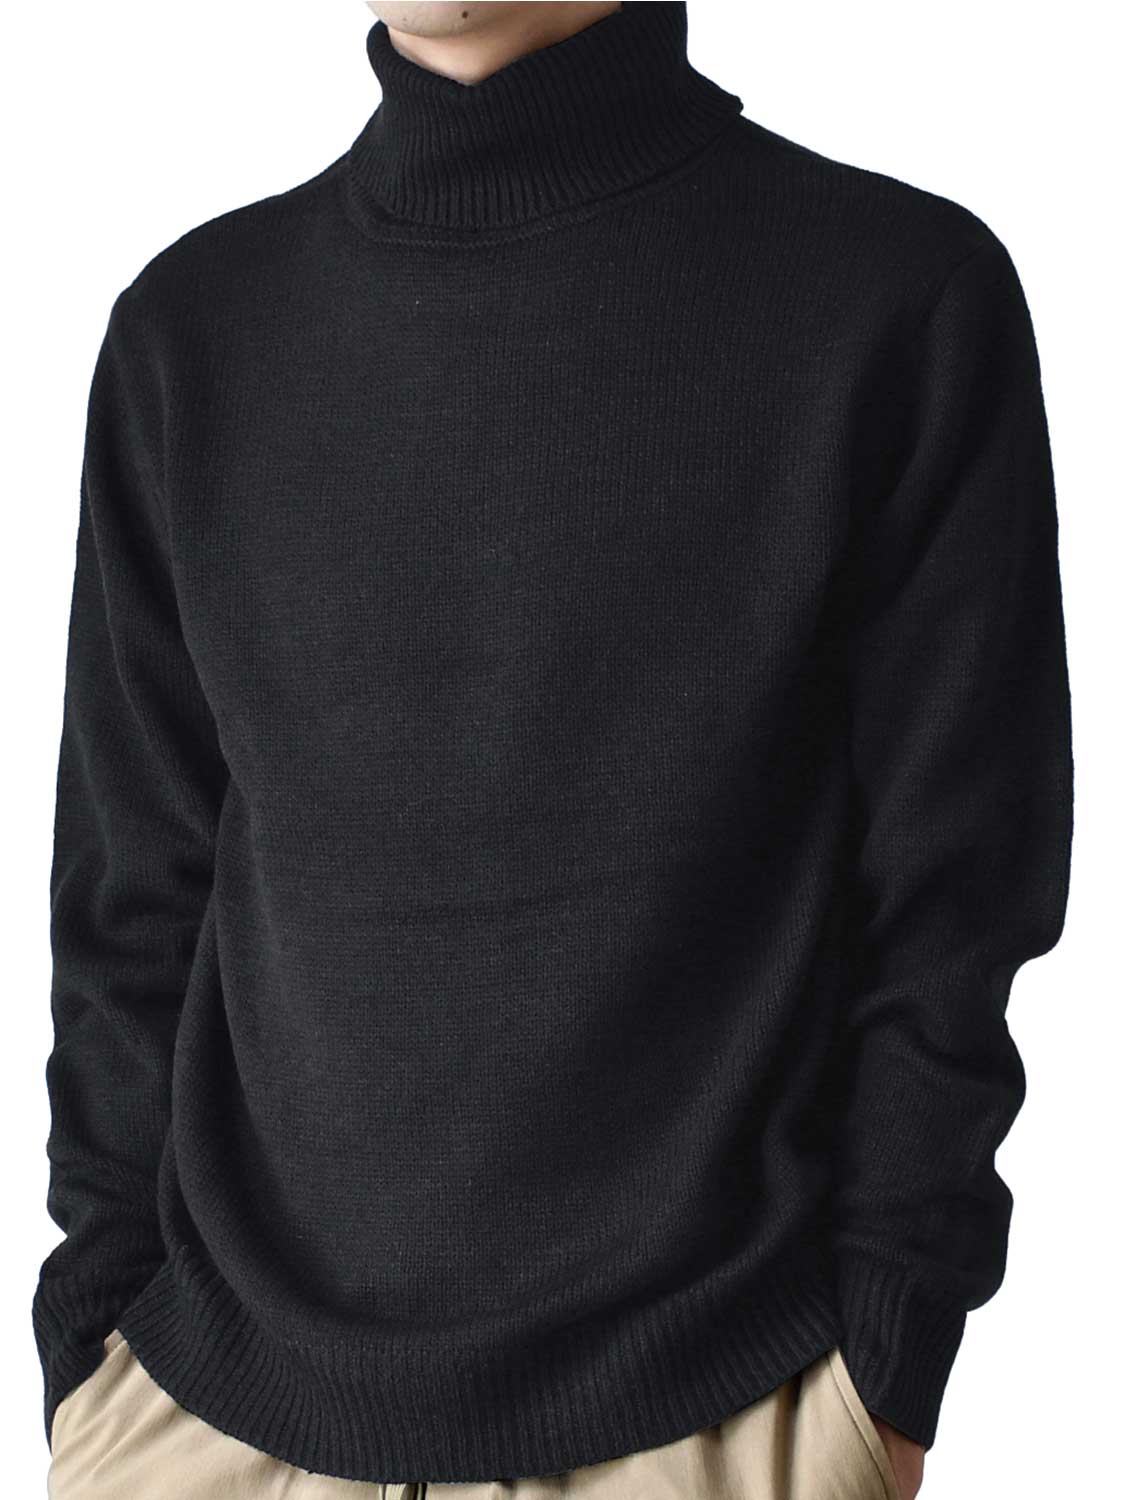 ニット セーター メンズ タートルネック ウォッシャブル 暖か 送料無料 通販YC